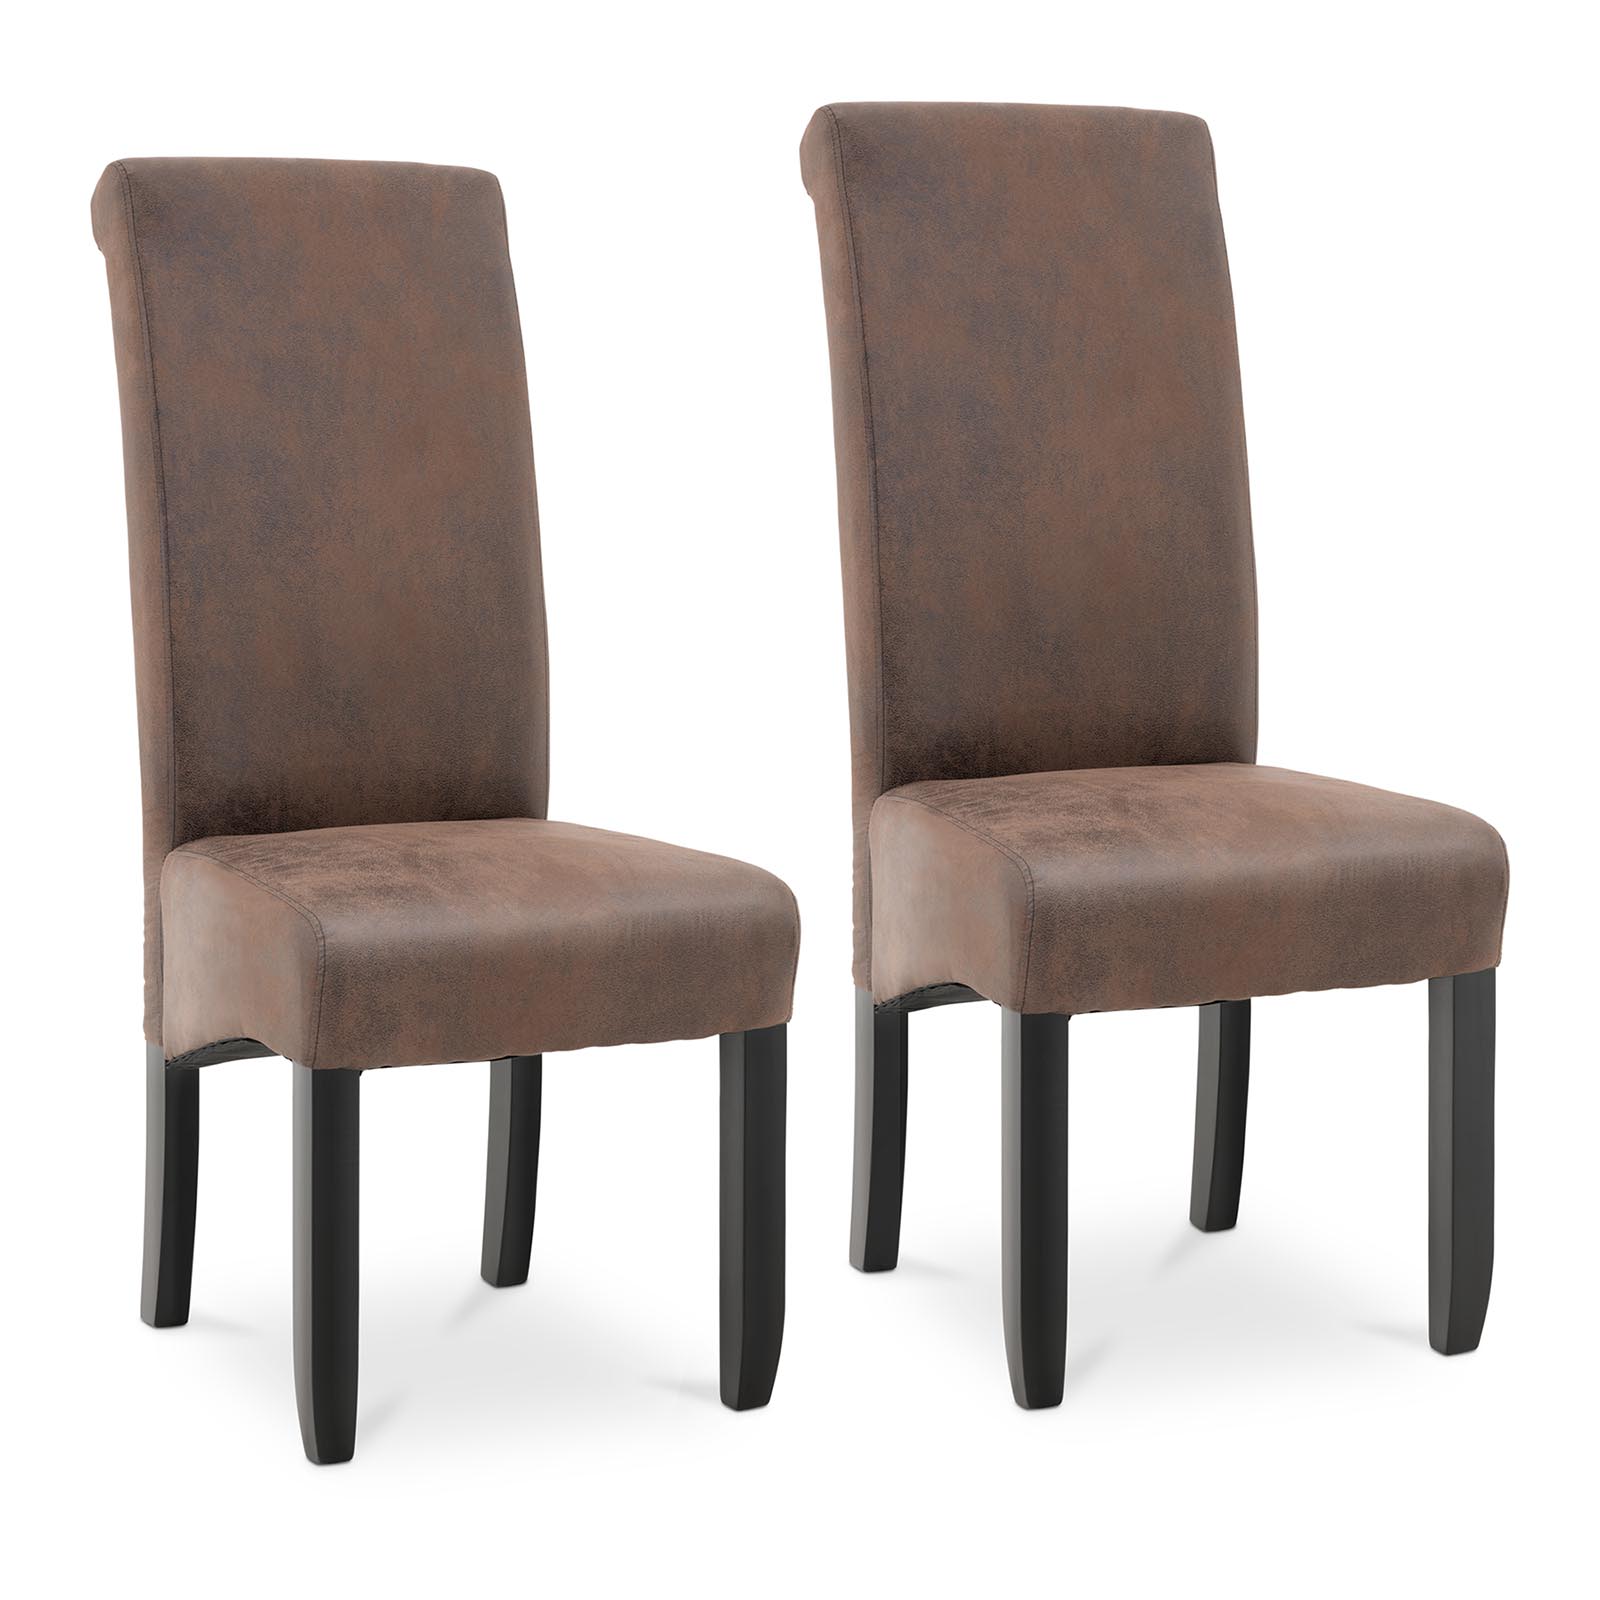 Čalouněná židle - sada 2 kusů - do 180 kg - sedací plocha 44,5 x 44 cm - hnědá